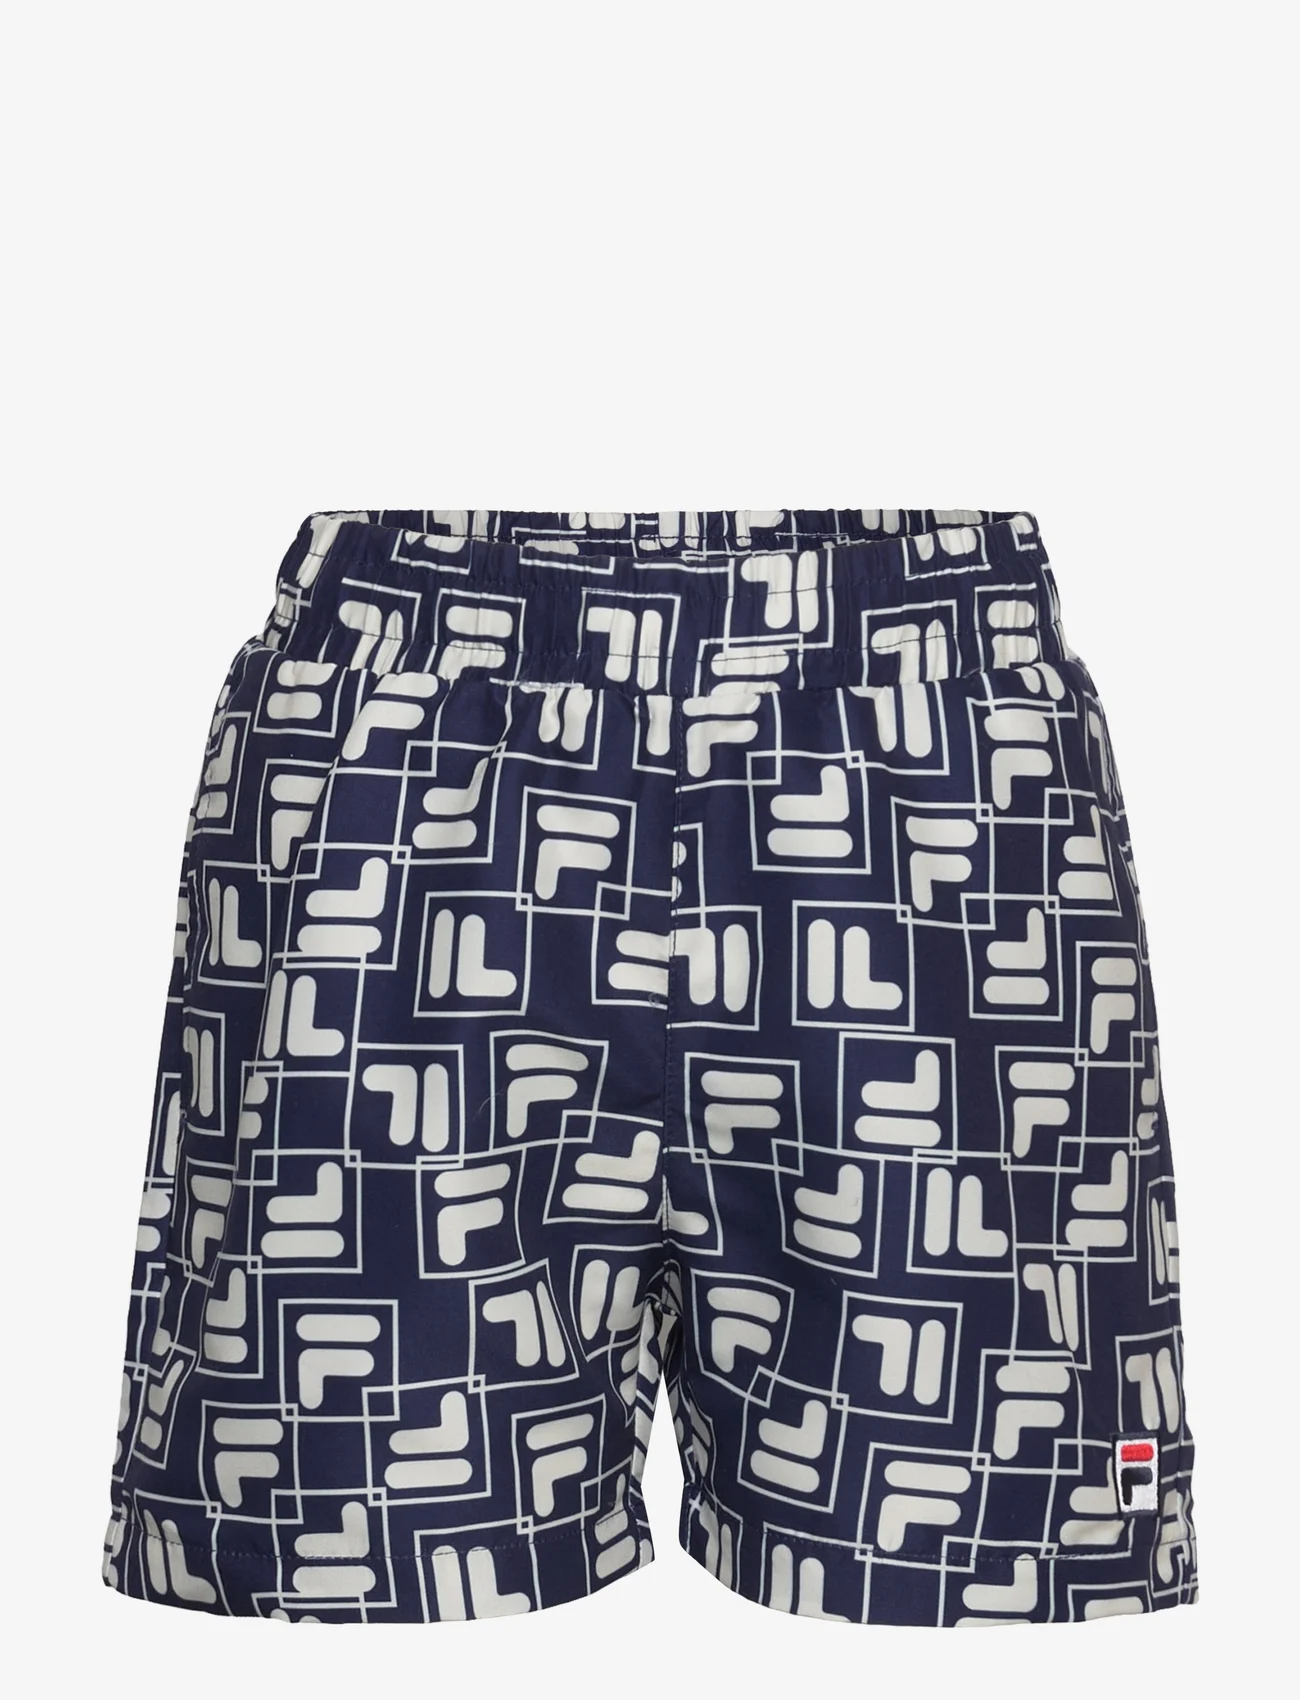 FILA - LAUDERT AOP beach shorts - kesälöytöjä - medieval blue playful f-box aop - 0